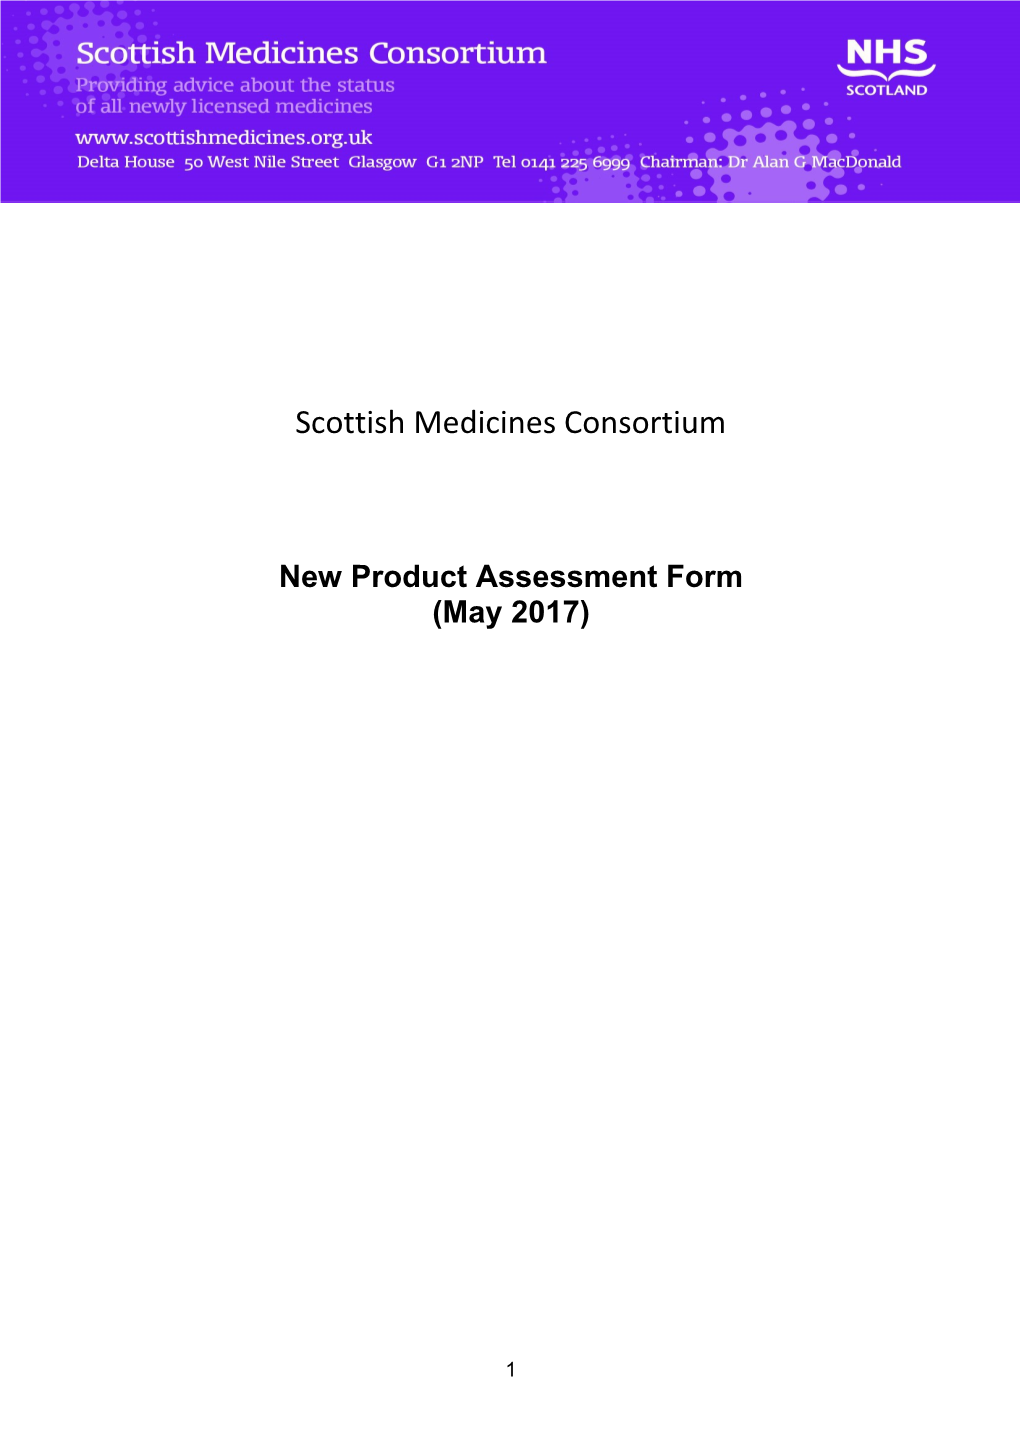 Scottish Drug and Therapeutics Consortium